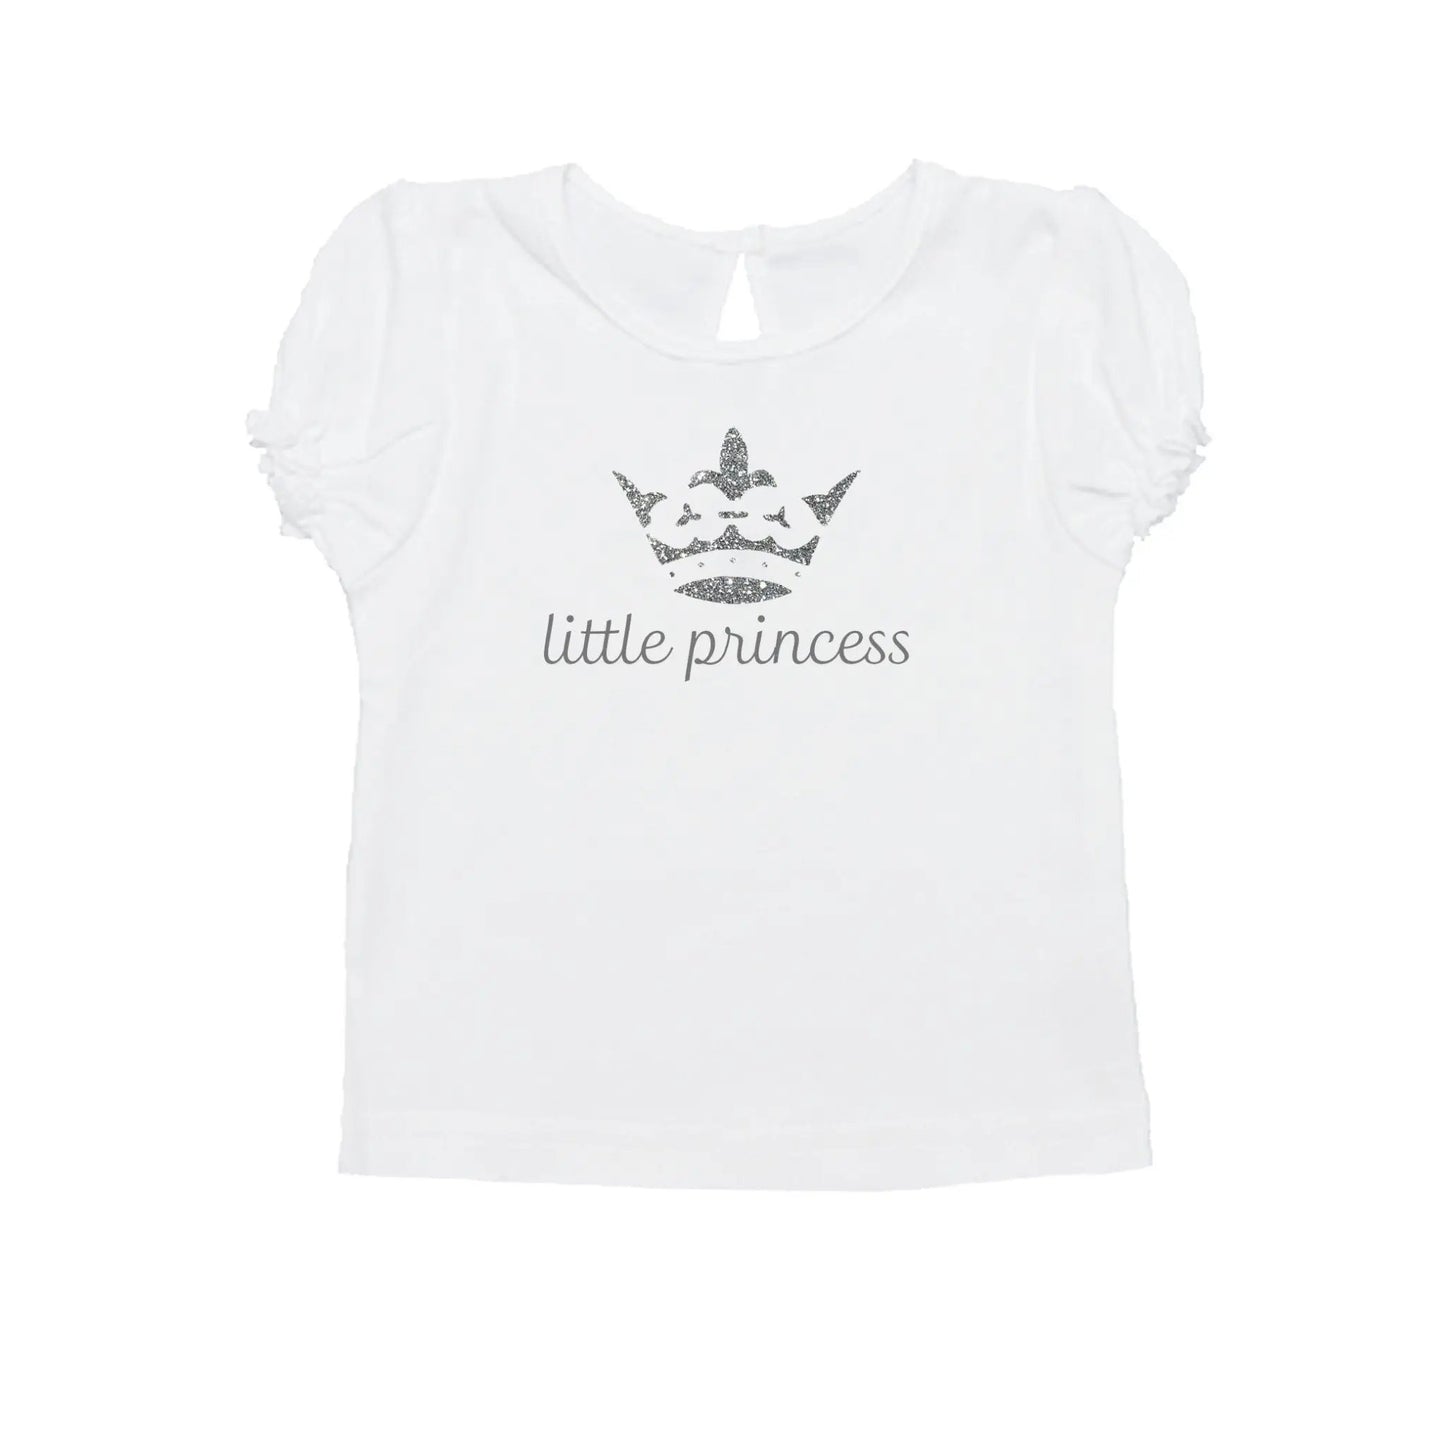 Geschenk Set "Prinzessin" für Babys - Kaufhaus des Südens